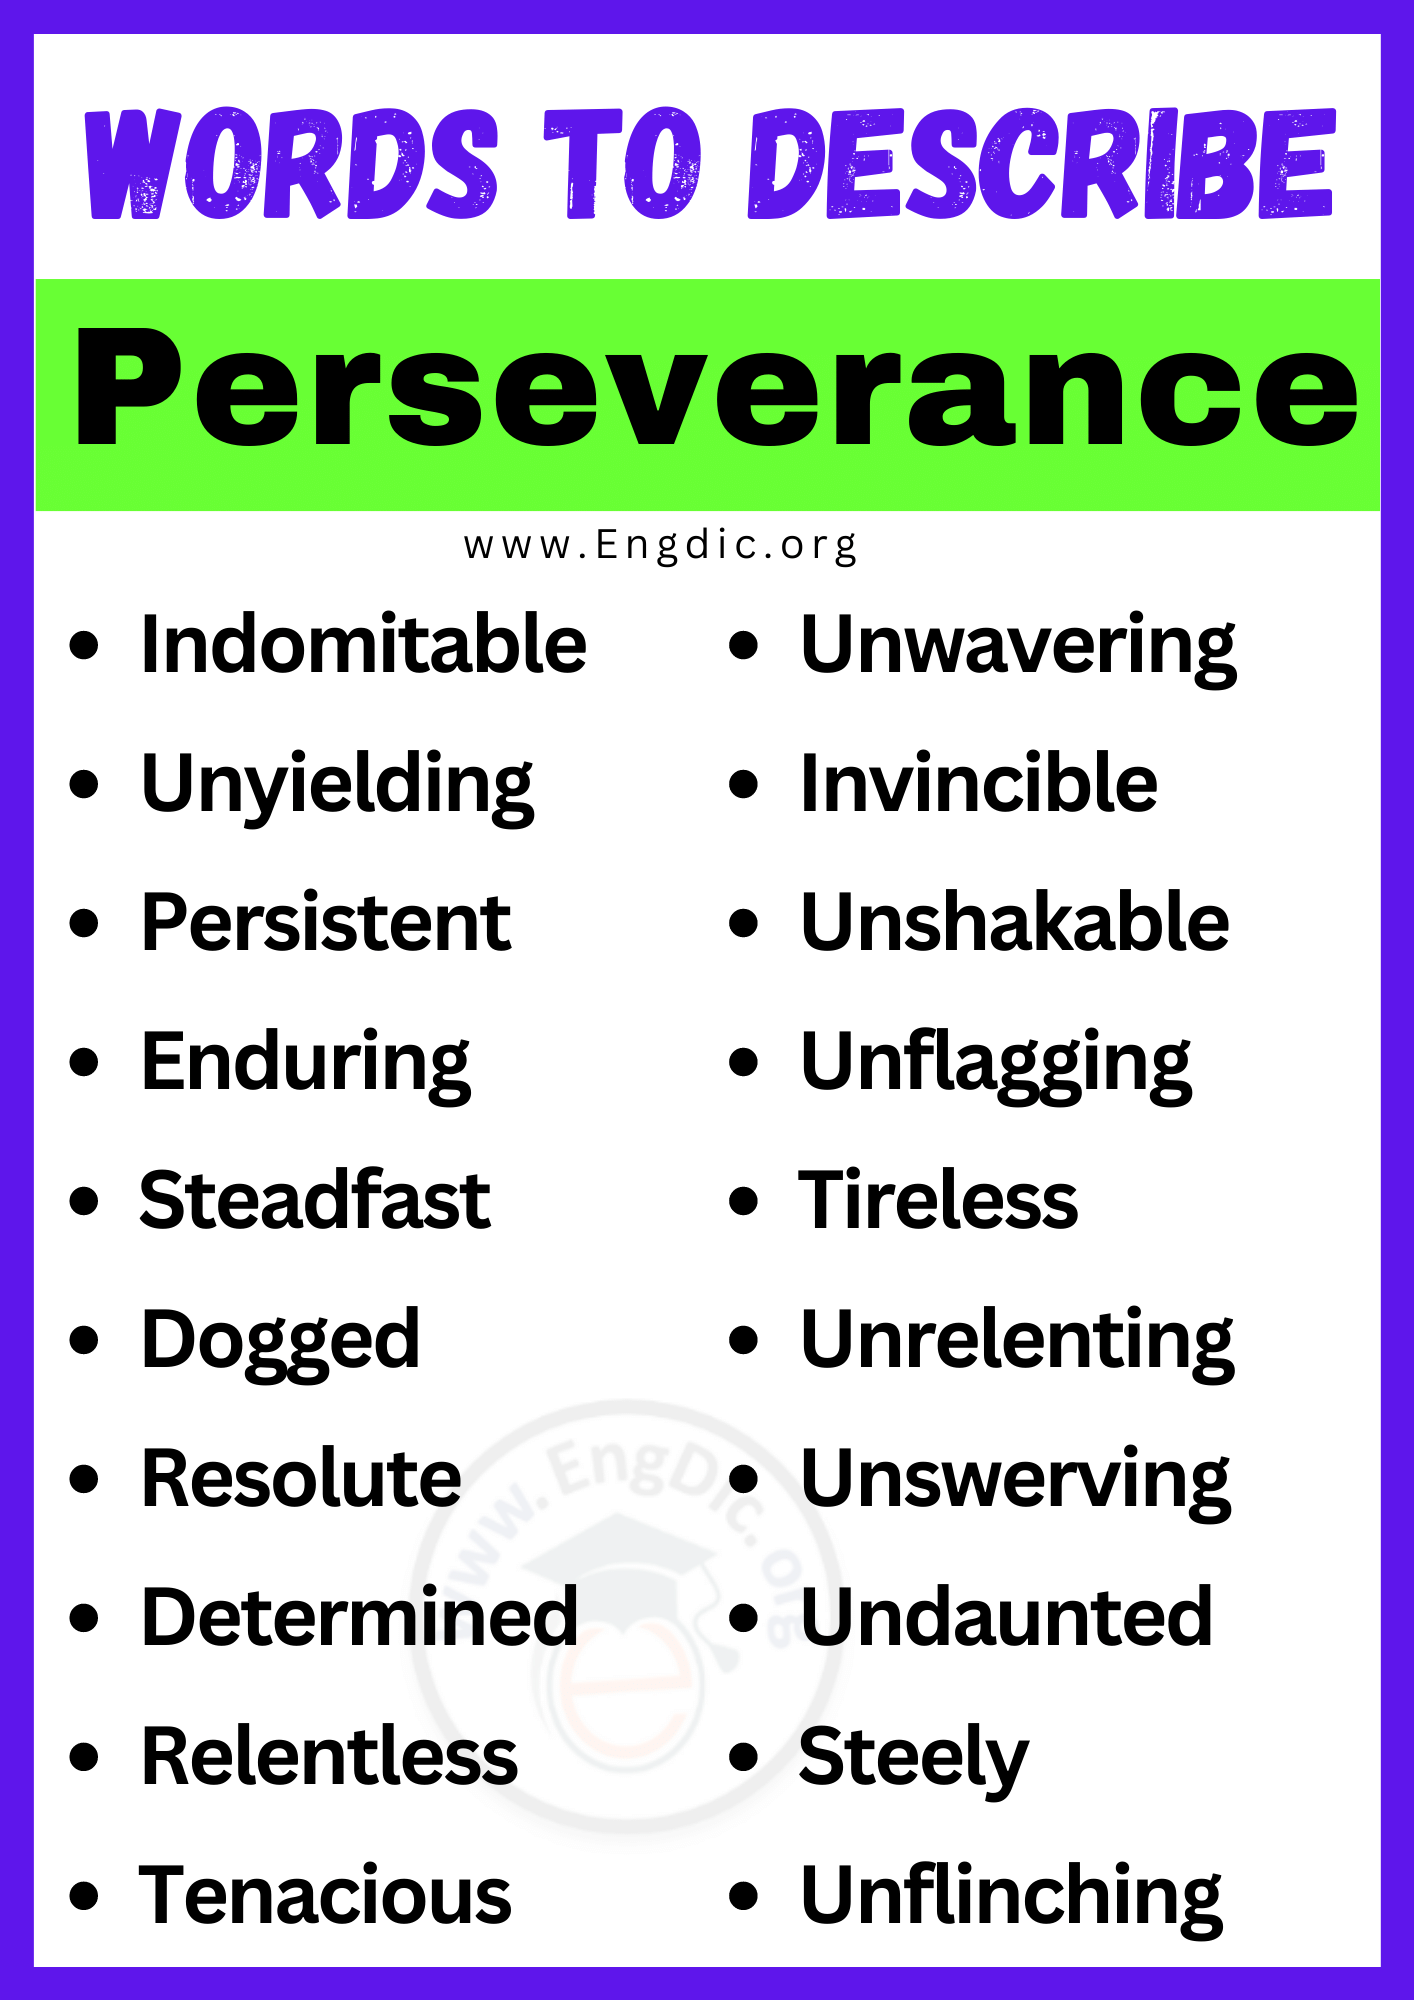 Words to Describe Perseverance